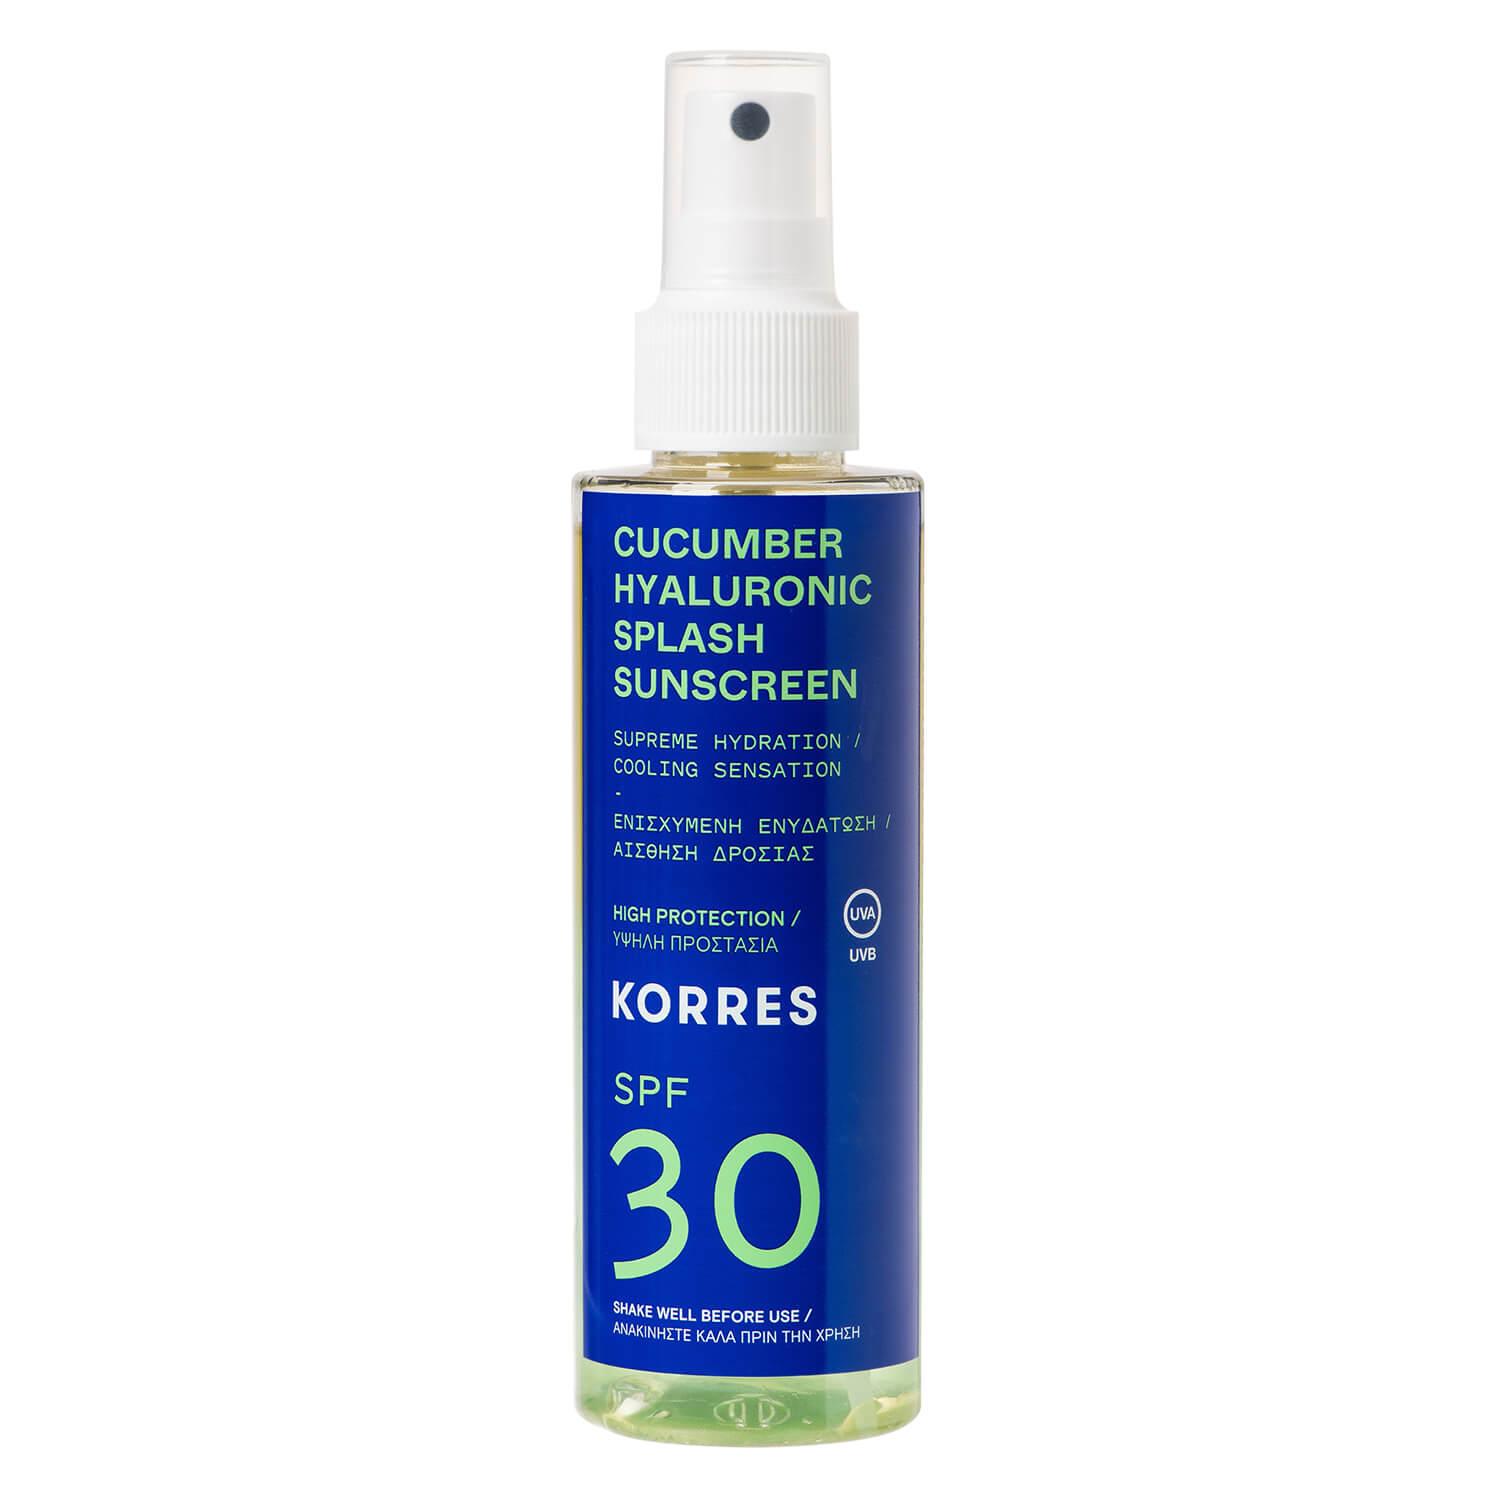 Korres Care - Cucumber Hyaluronic Splash Sunscreen SPF30